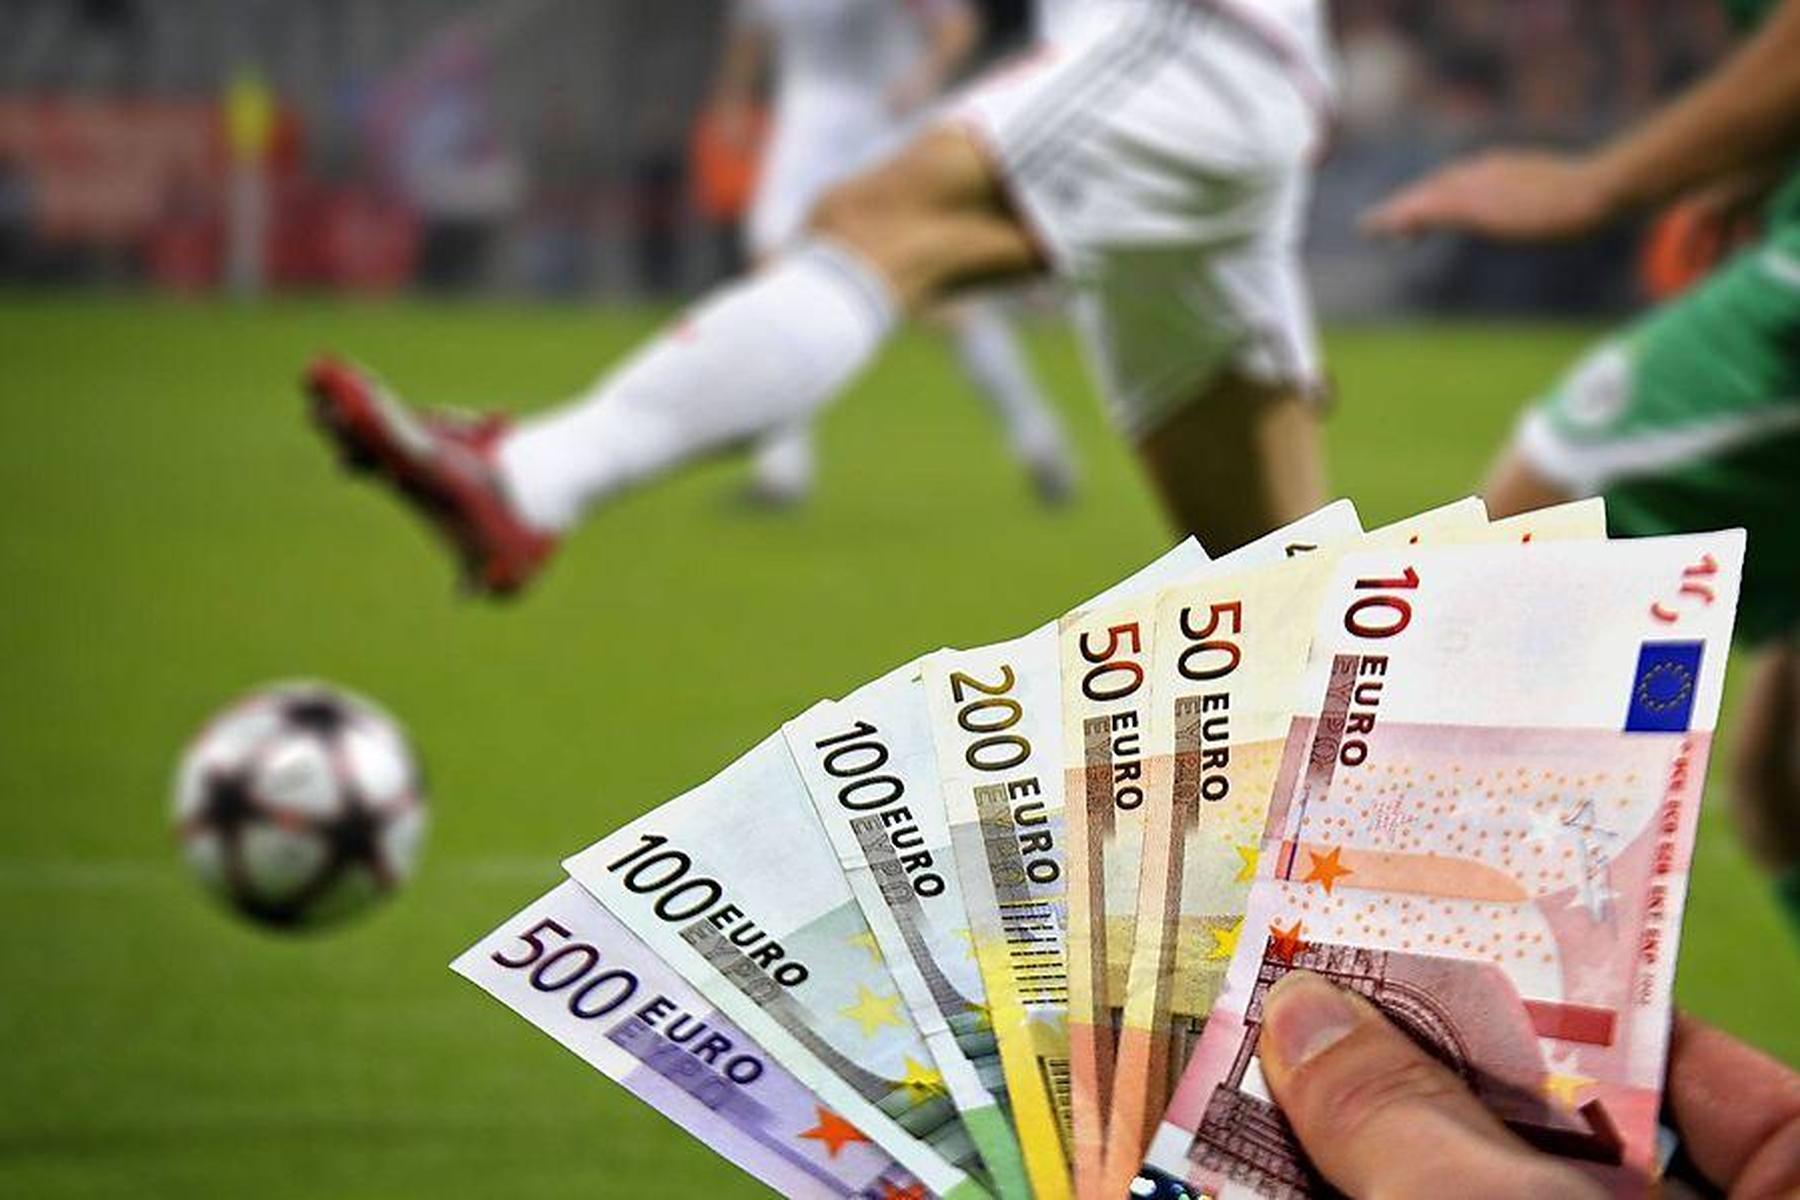 Gefährliche Sucht nach Online-Sportwetten: Sensations-Urteil: Wettanbieter muss spielsüchtigen Mann 500.000 Euro zahlen